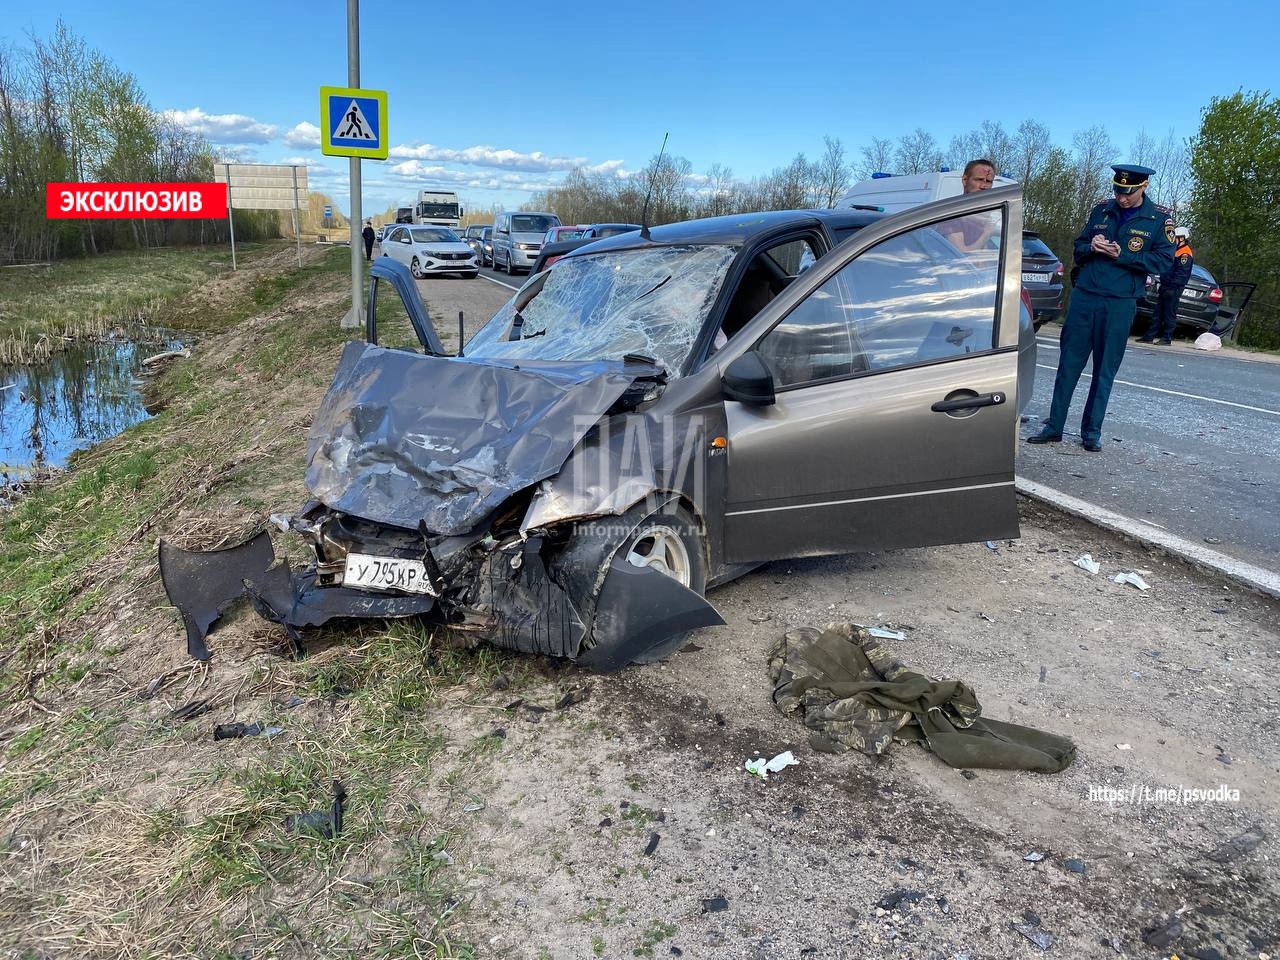 Пять человек пострадали в аварии с нетрезвыми водителями в Псковском районе